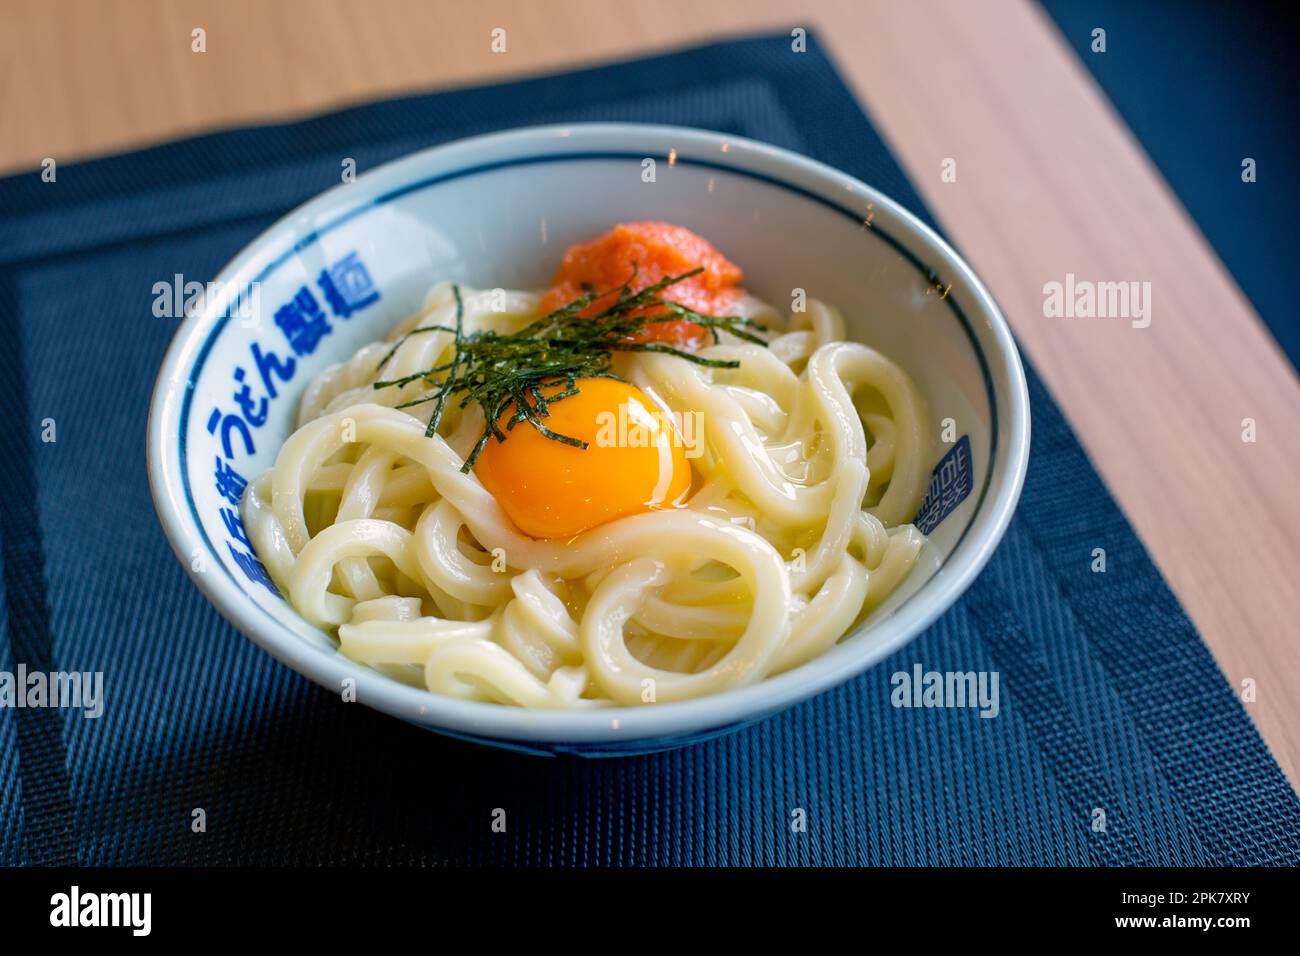 Un piatto di tagliatelle, verdure e pesce con un tuorlo d'uovo giallo. Foto Stock